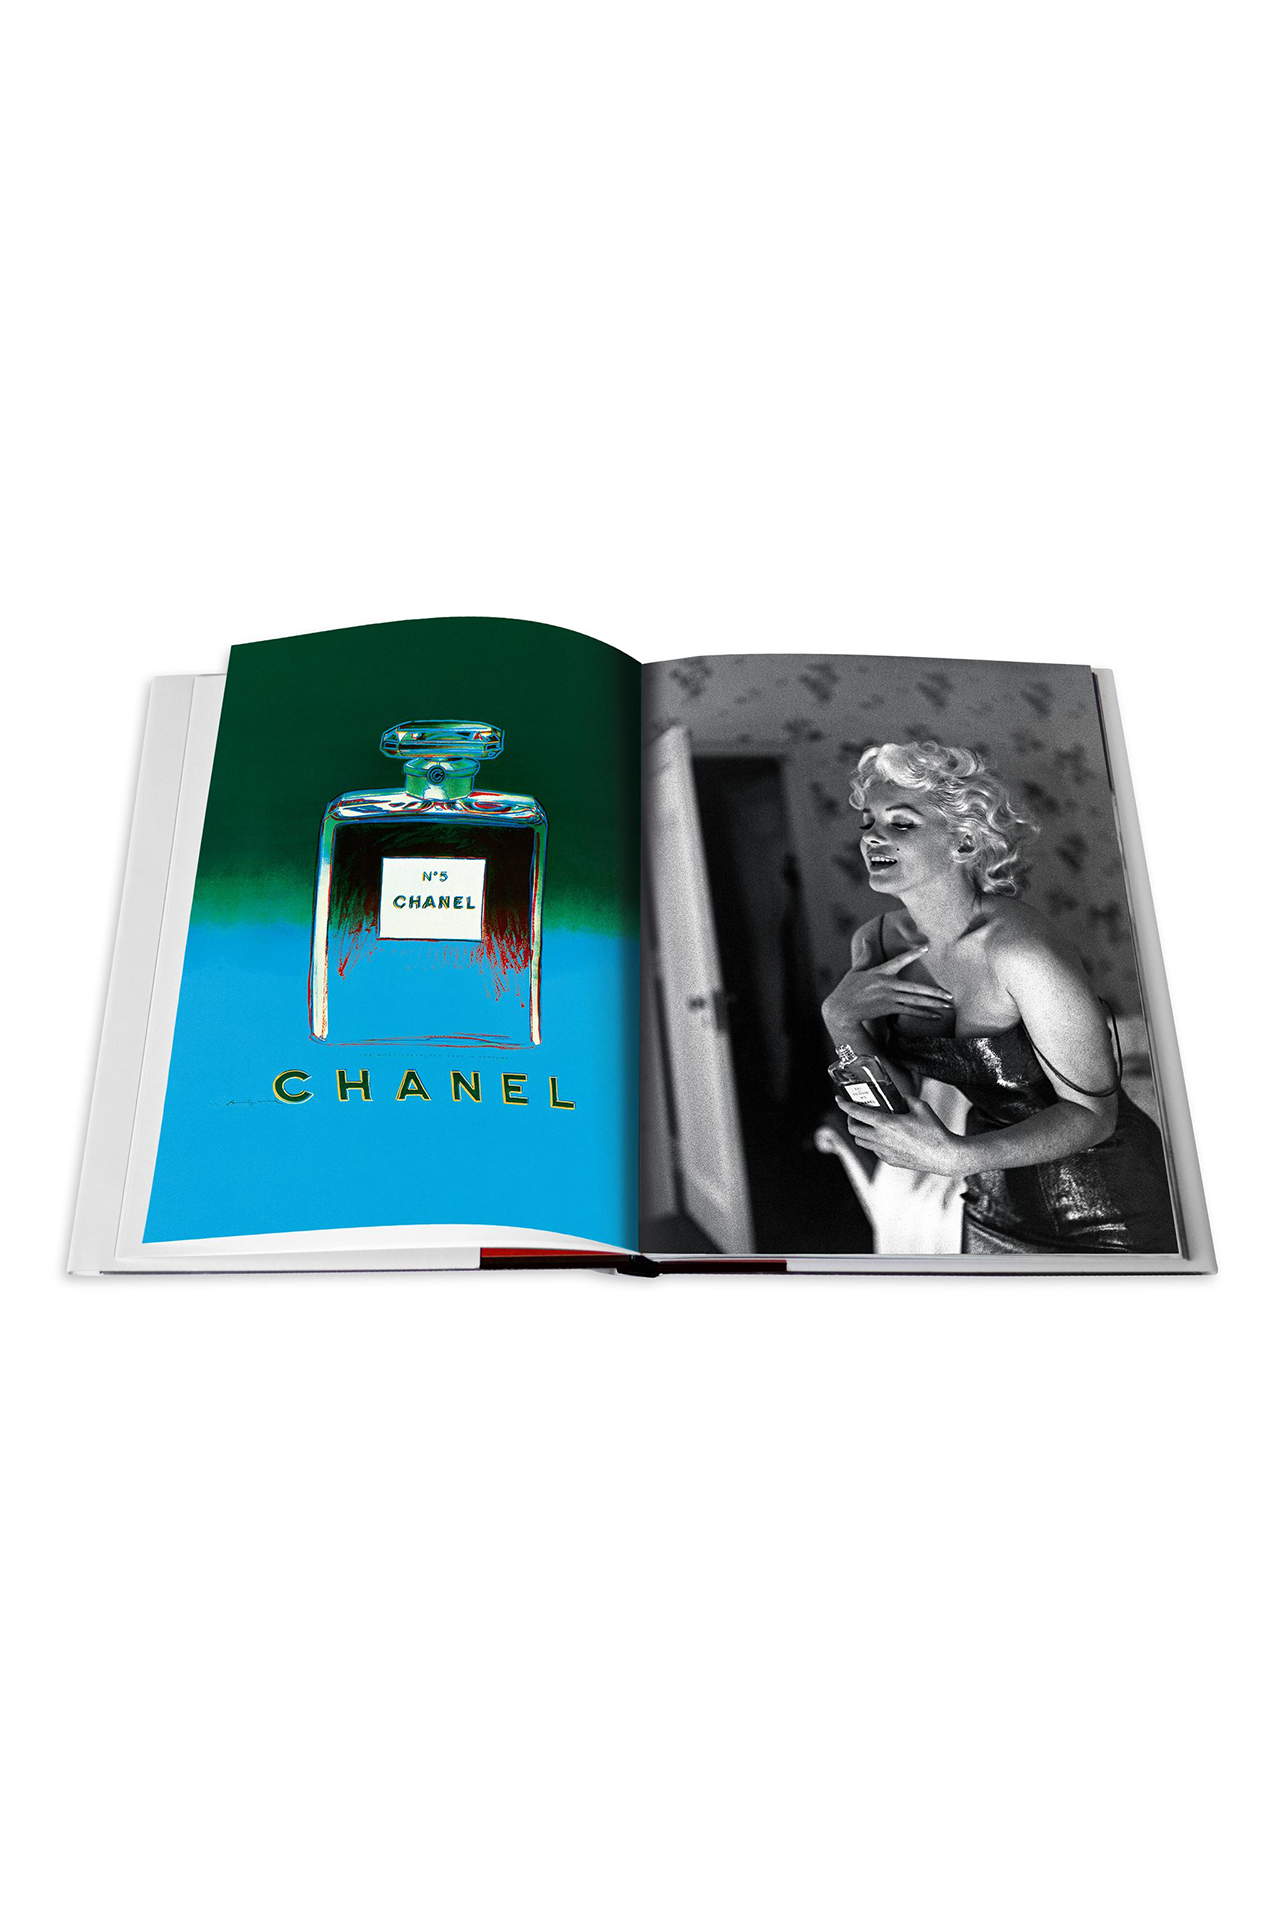 Chanel 3-Book slipcase - Newport